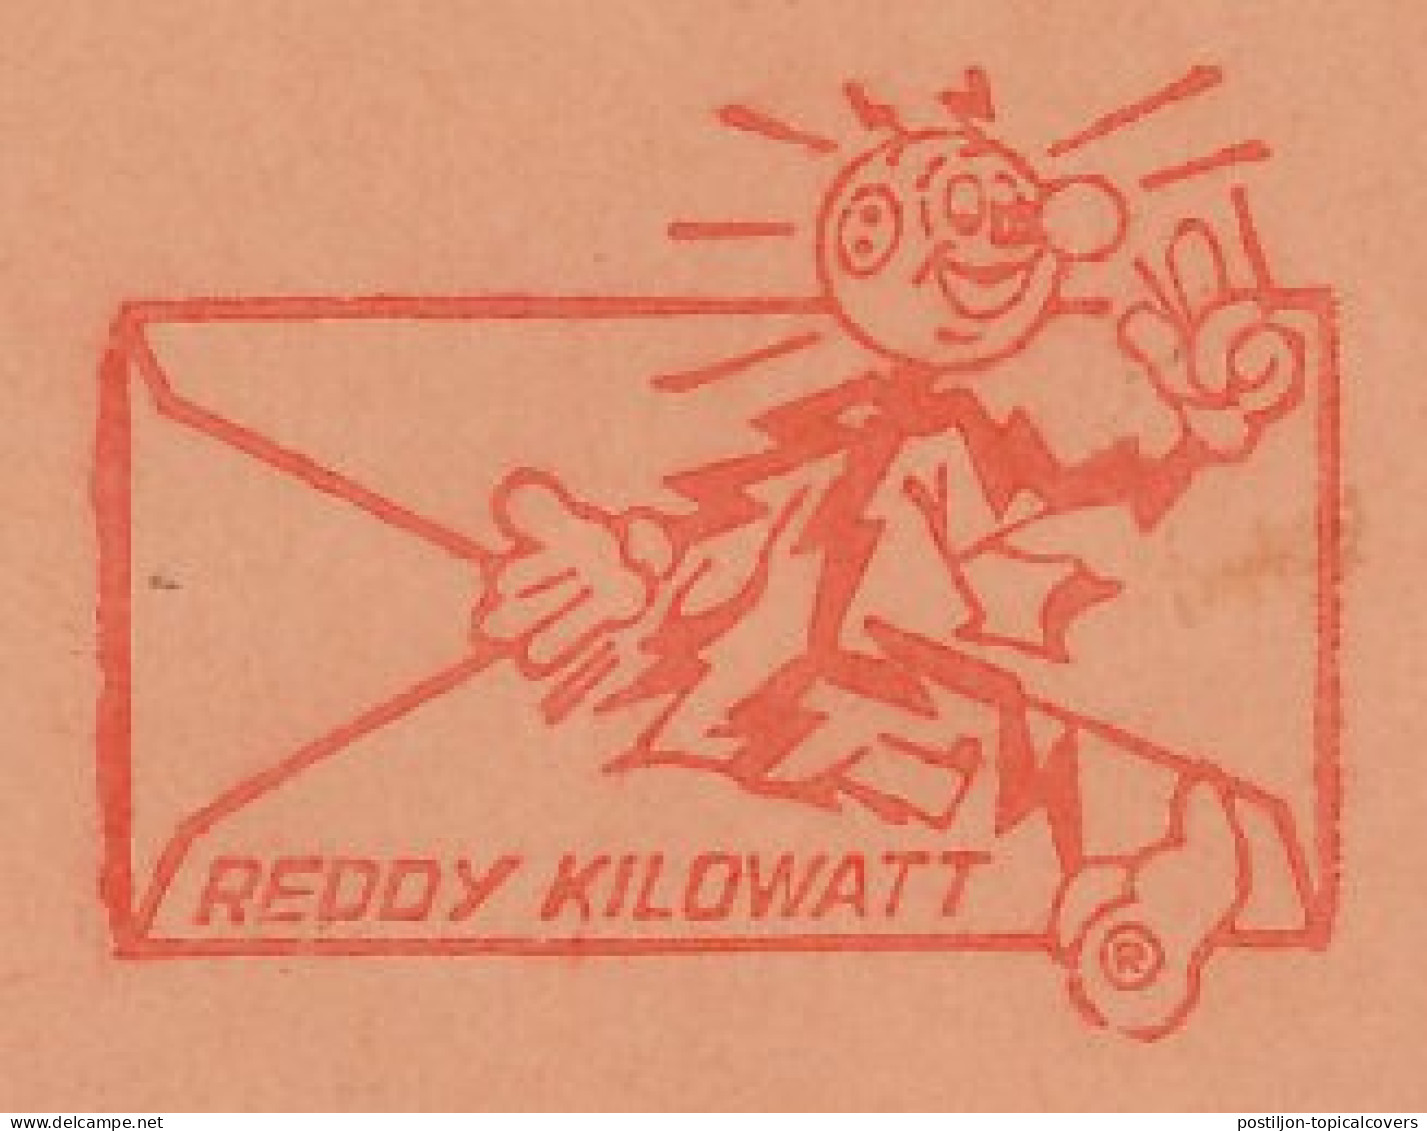 Meter Cut Belgium 1986 Reddy Kilowatt - Elettricità